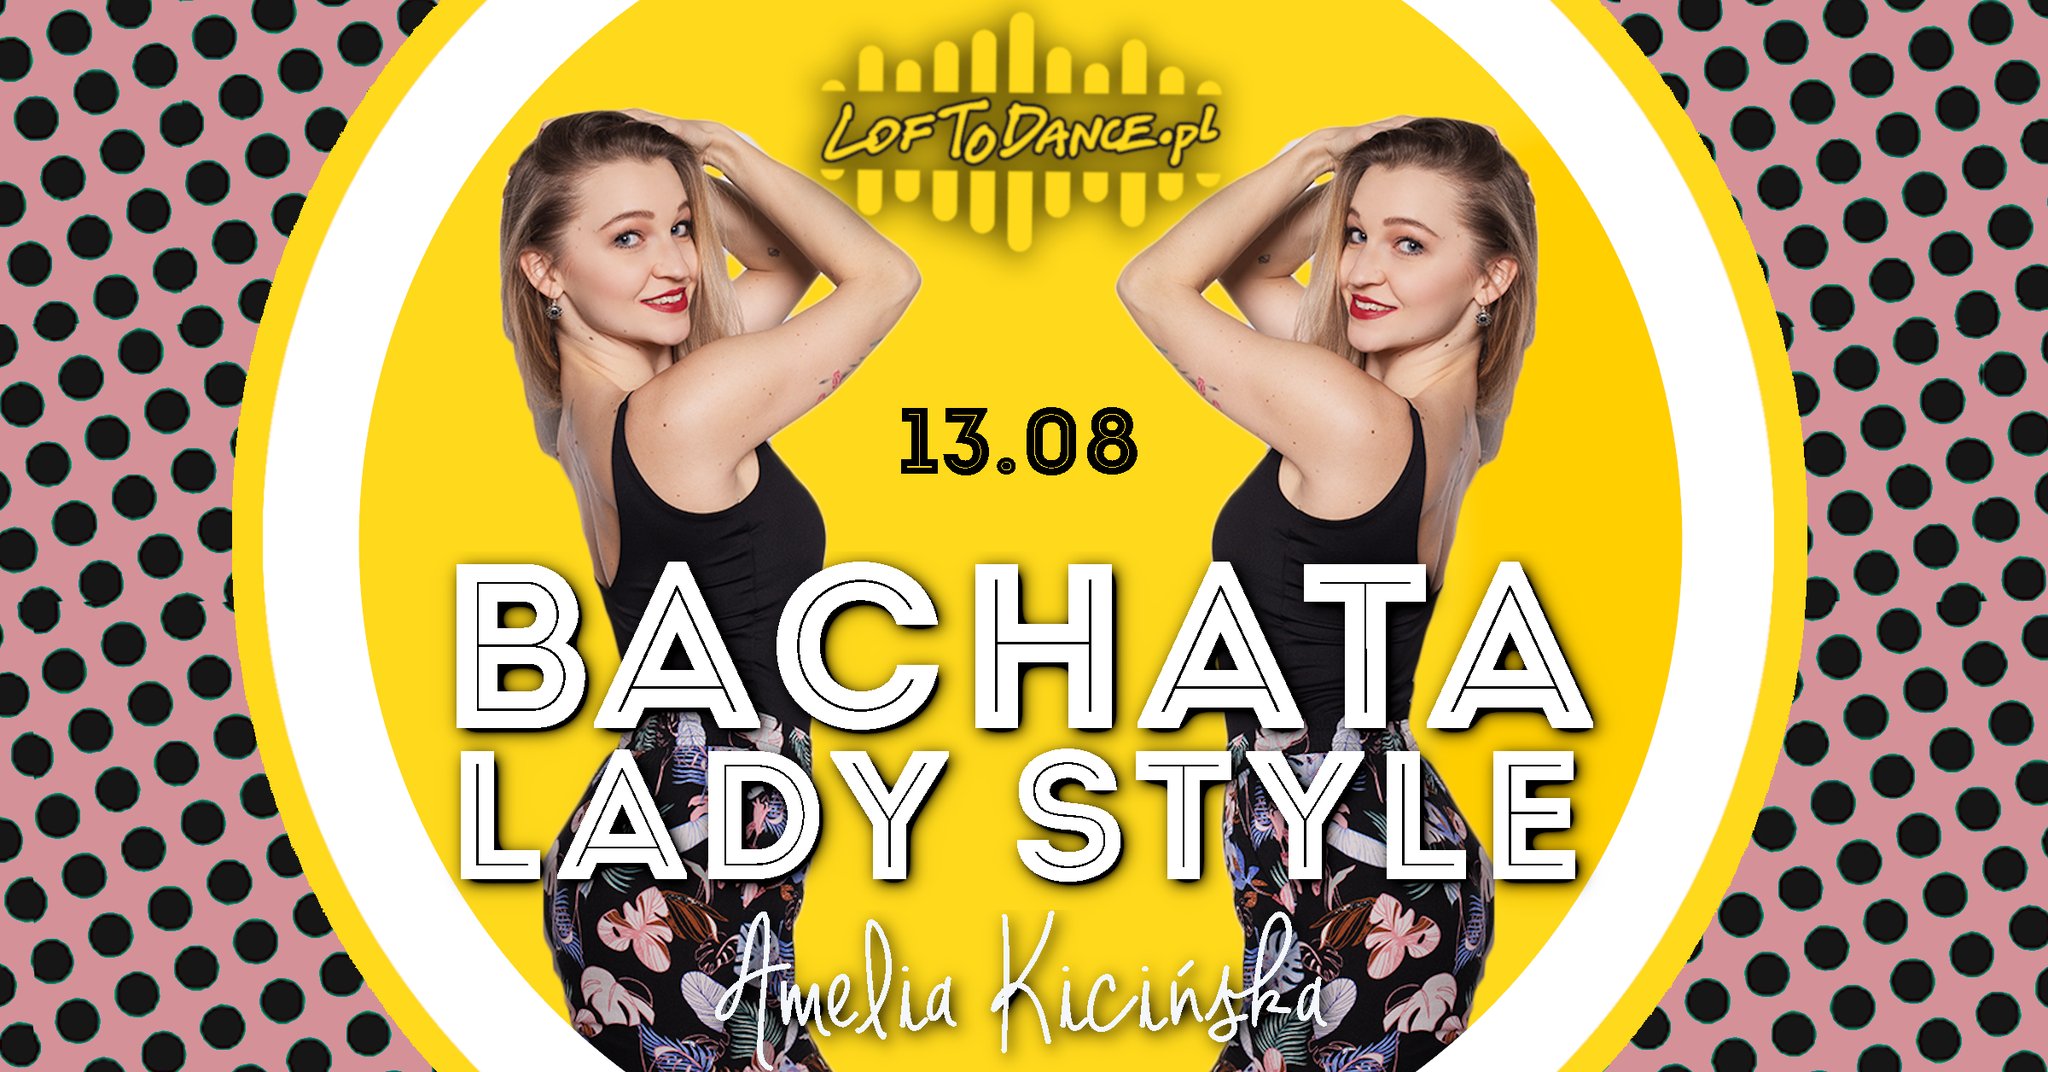 Bachata lady style z Amelią Kicińską! - sklep Loftodance